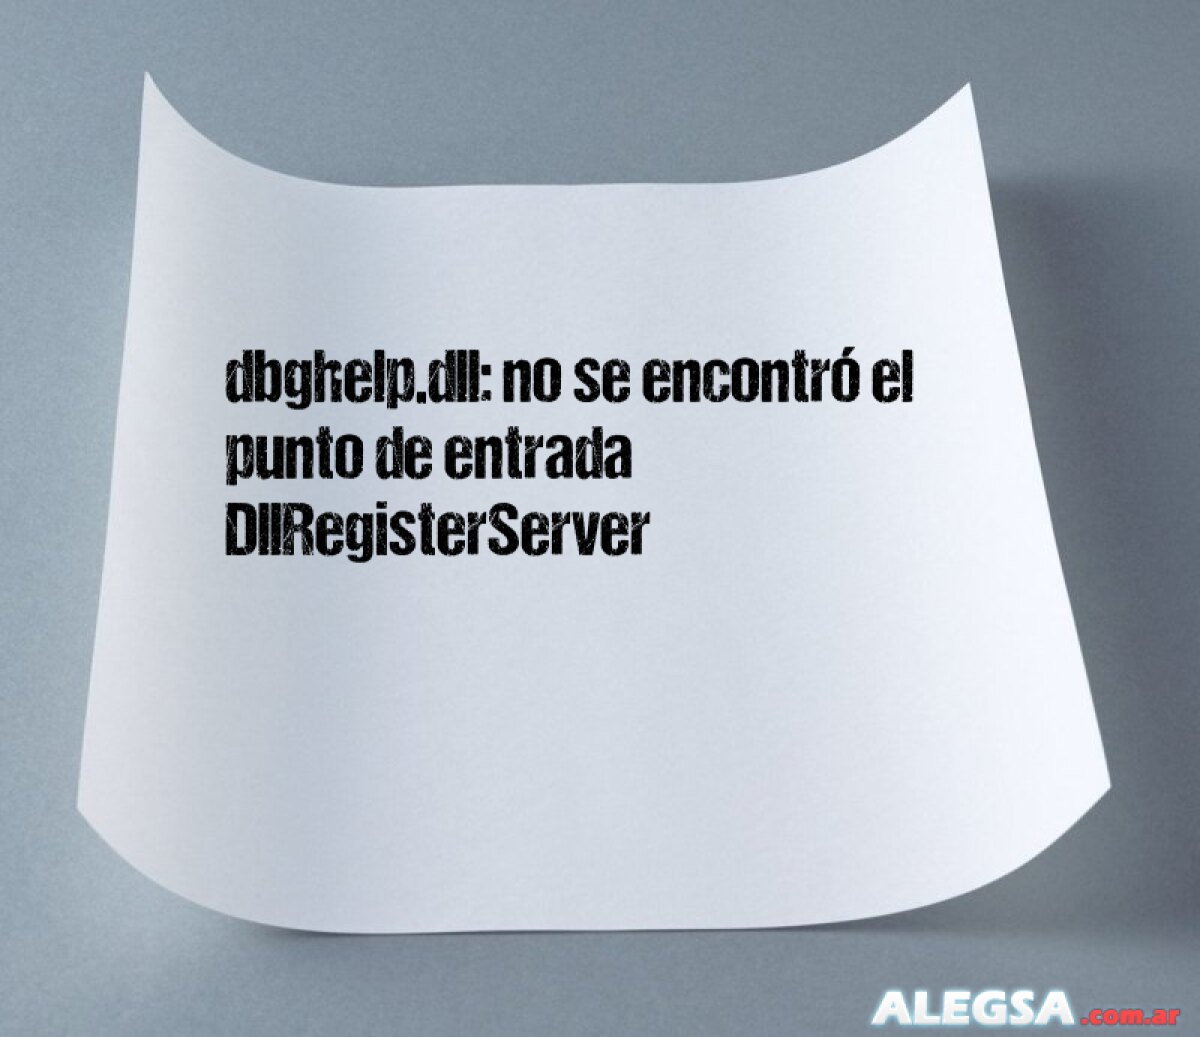 dbghelp.dll: no se encontró el punto de entrada DllRegisterServer